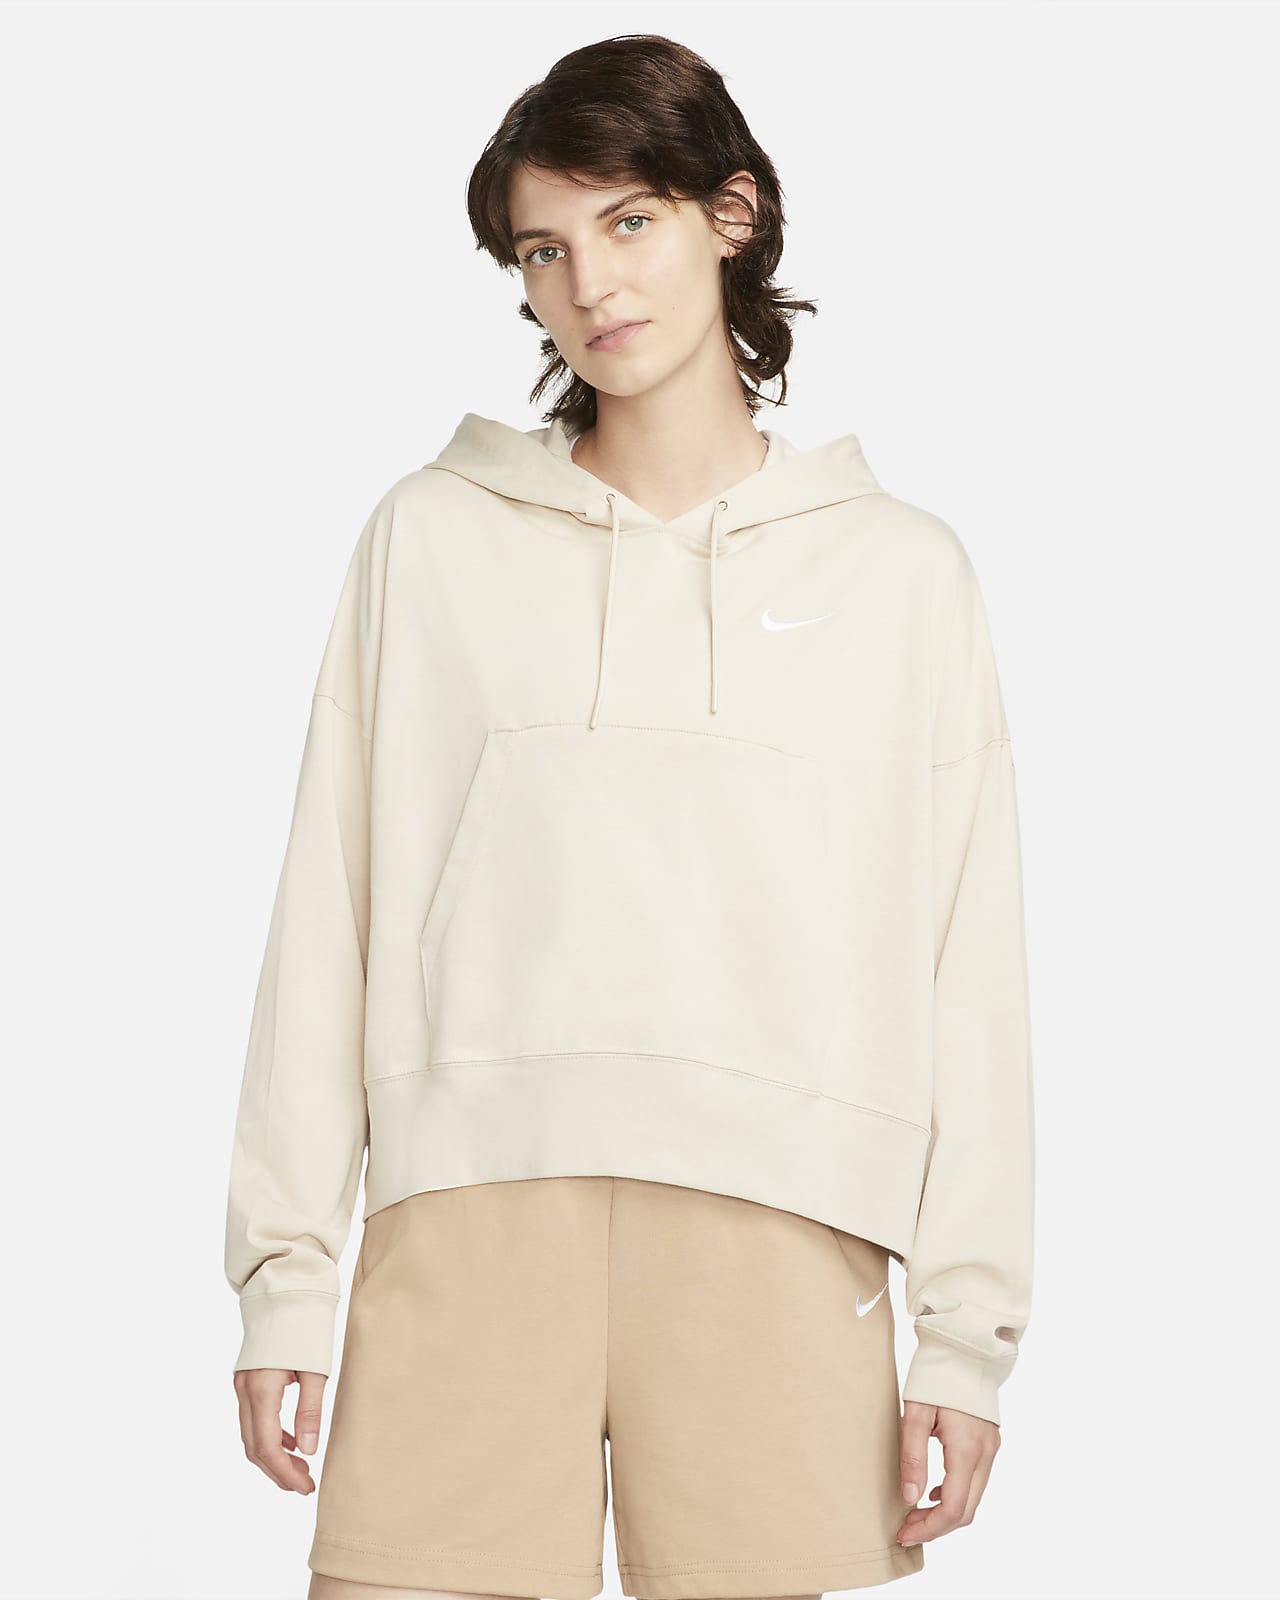 Nike Sportswear Women's Oversized Jersey Pullover Hoodie